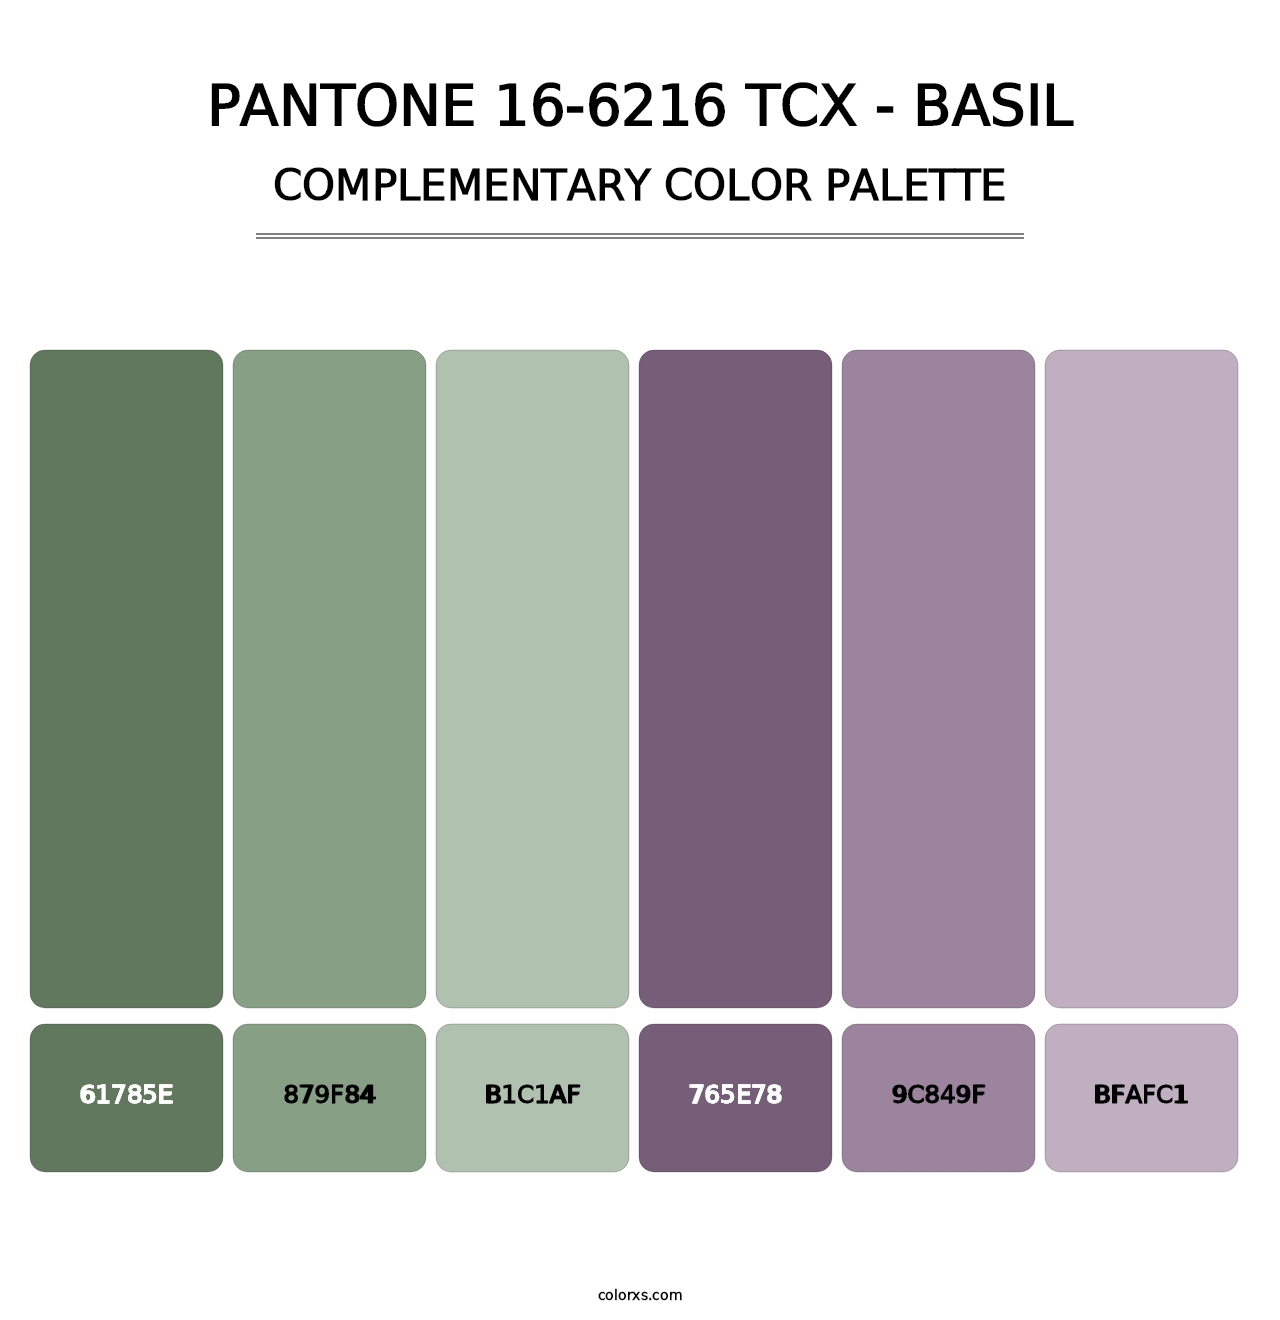 PANTONE 16-6216 TCX - Basil - Complementary Color Palette